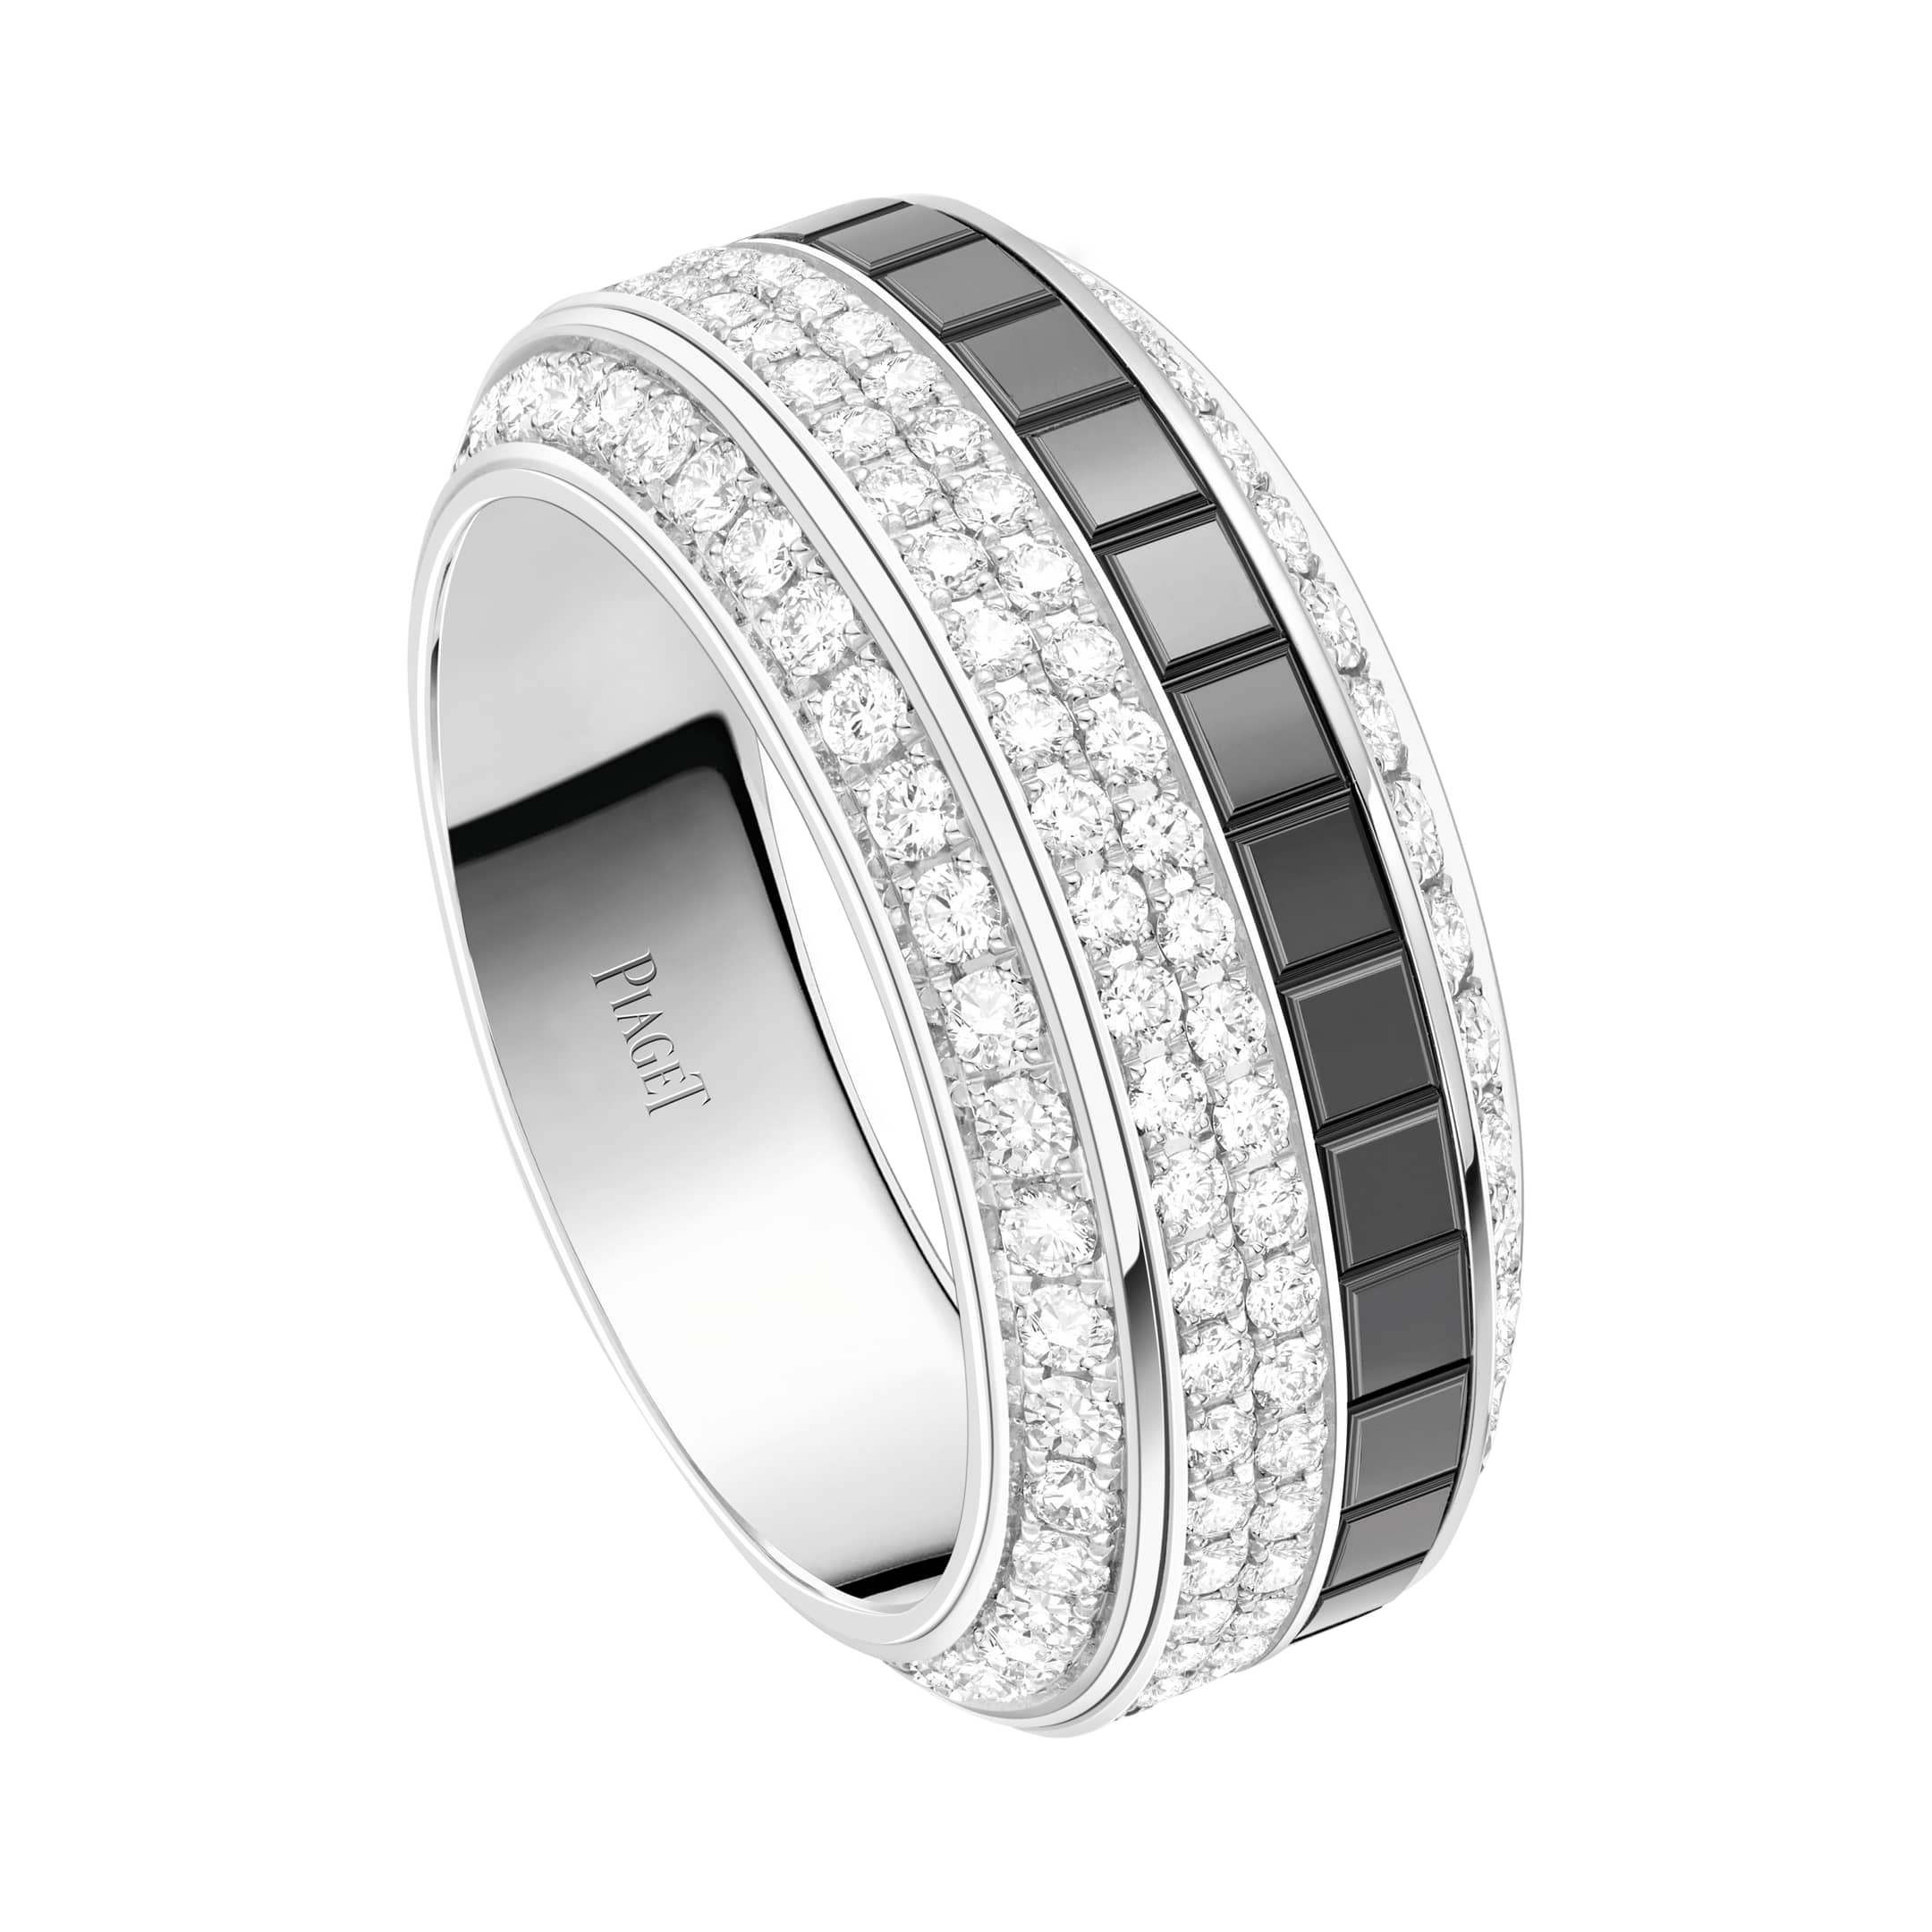 Ramkoers markt Actuator White Gold Ceramic Diamond Ring - Piaget Luxury Jewellery G34P2G00